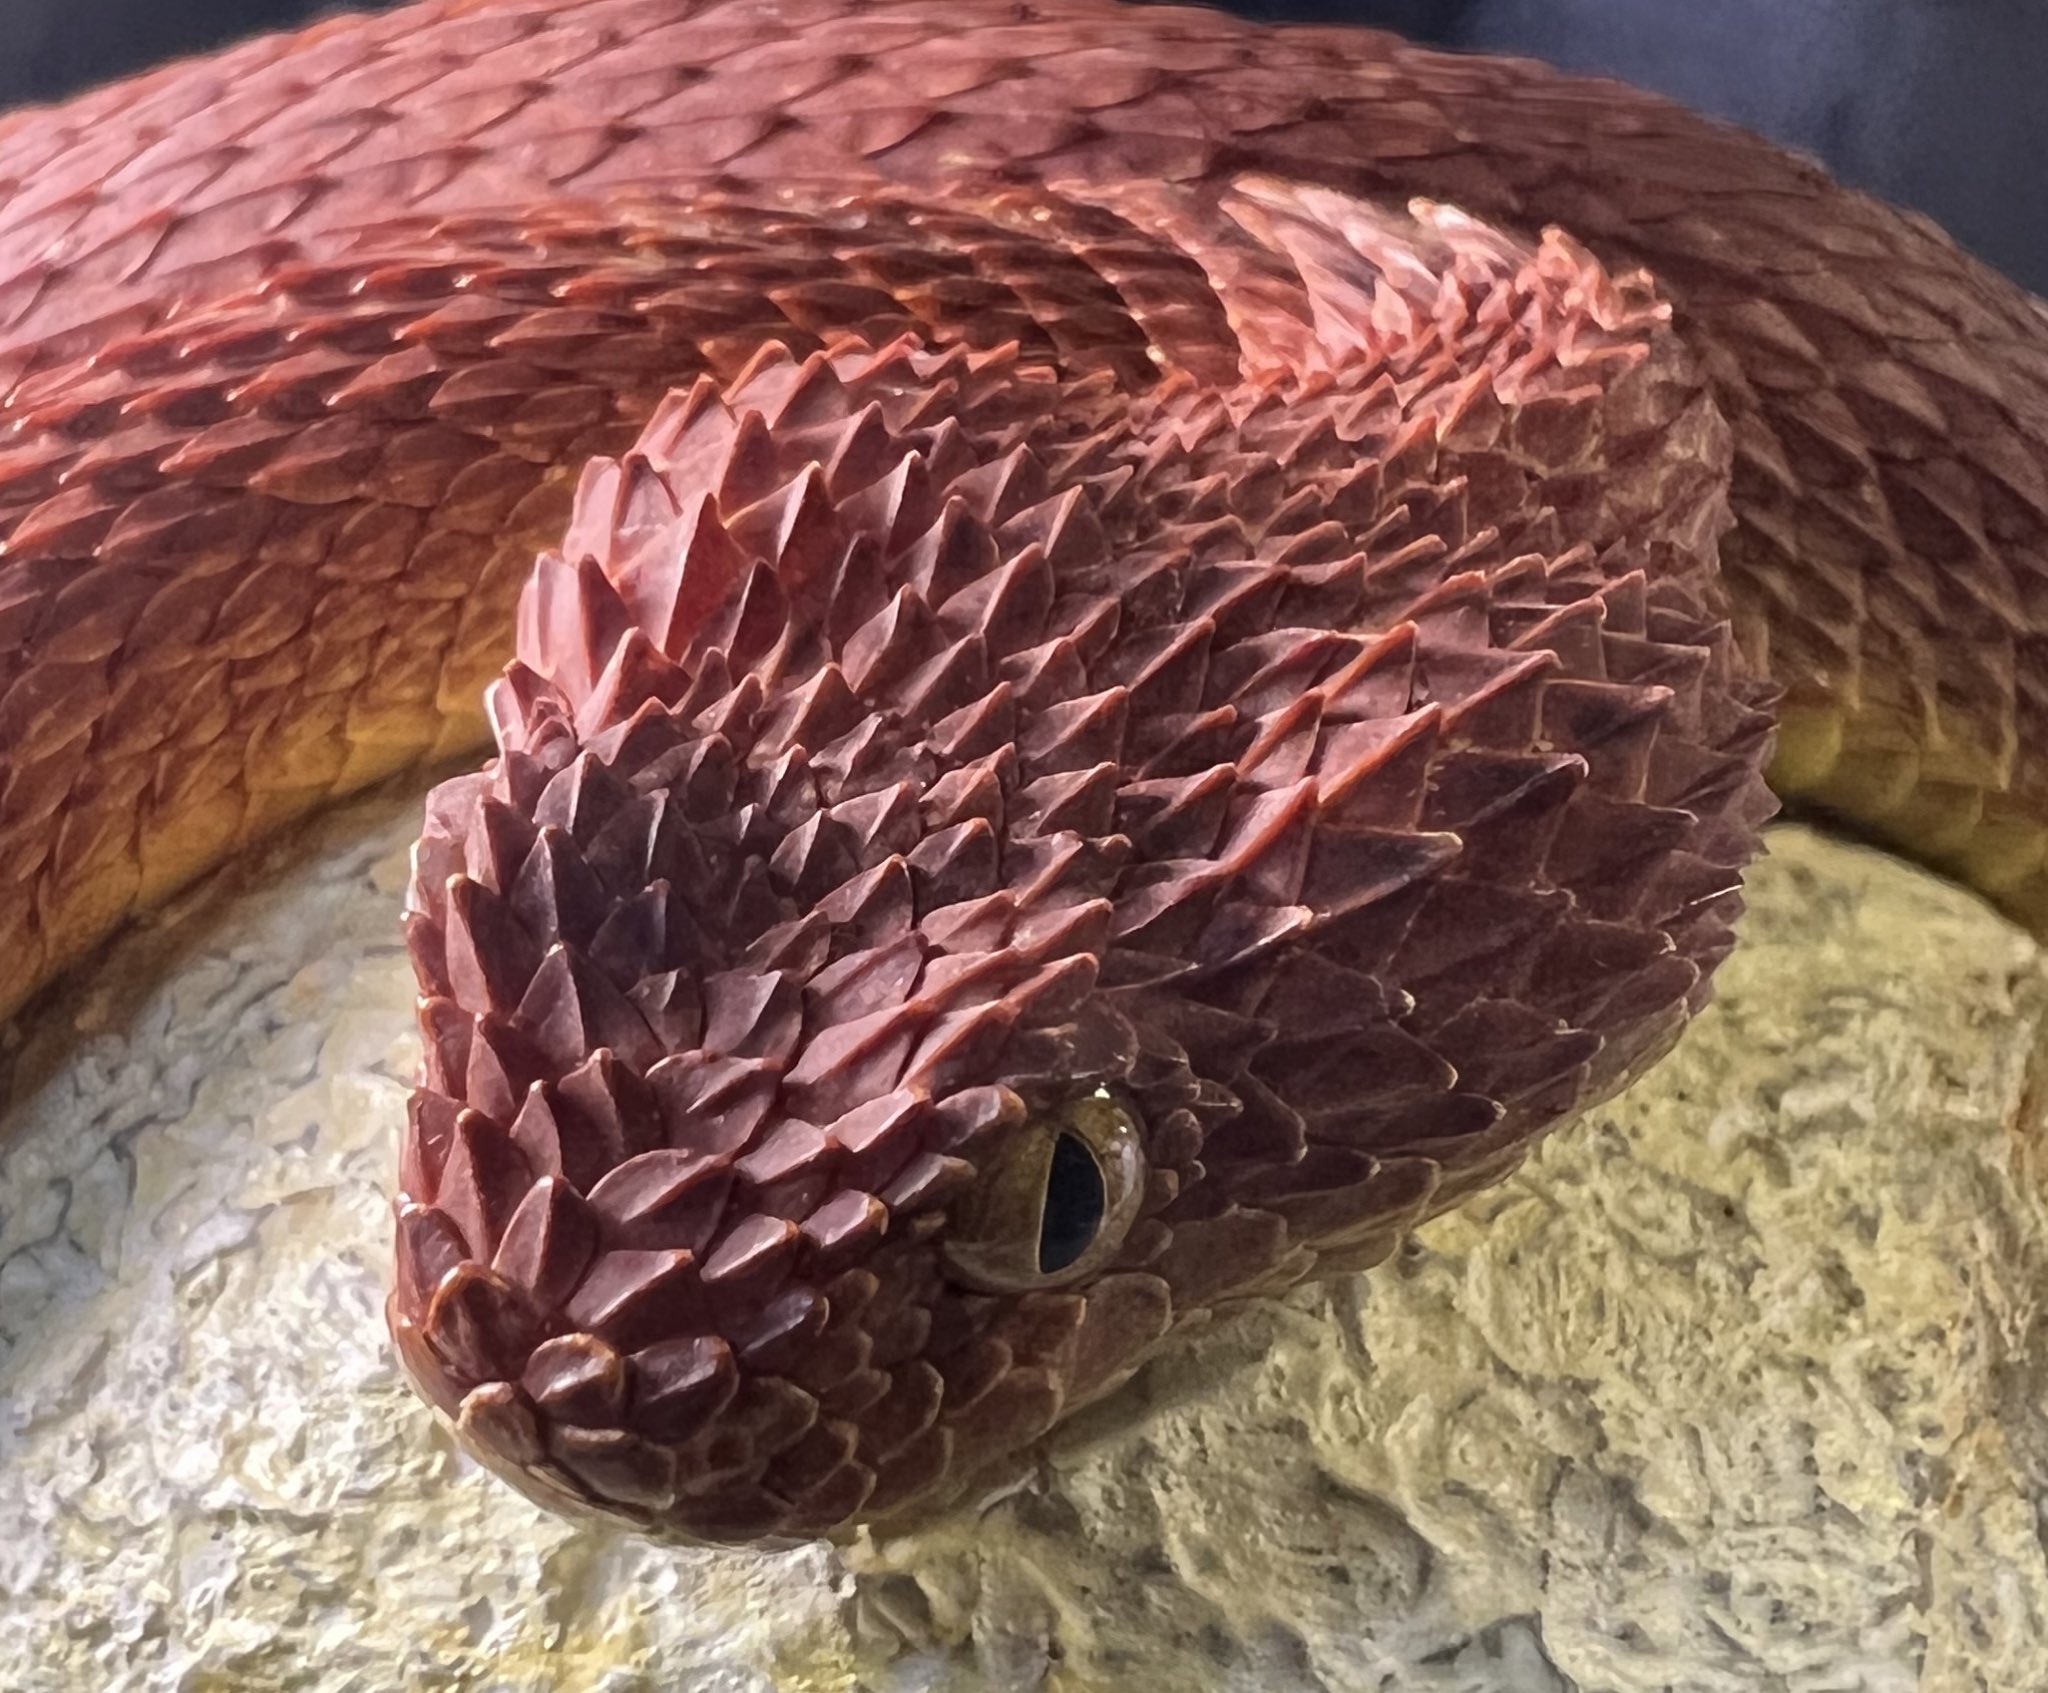 トギ 今日は世界ヘビの日らしいですね いつもしてるけど超カッコいいヘビの写真でもツイートしておこう 世界ヘビの日 T Co Y14ytm6jd2 Twitter